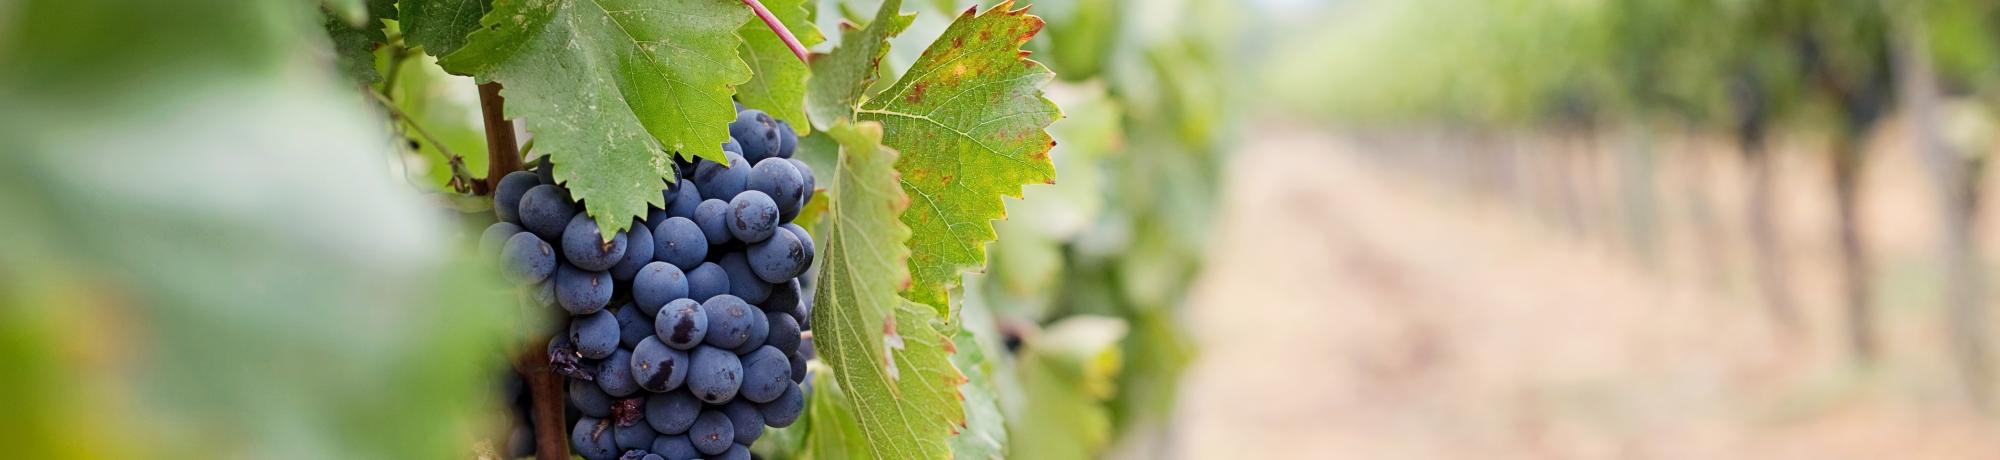 Grapevine in vineyard 